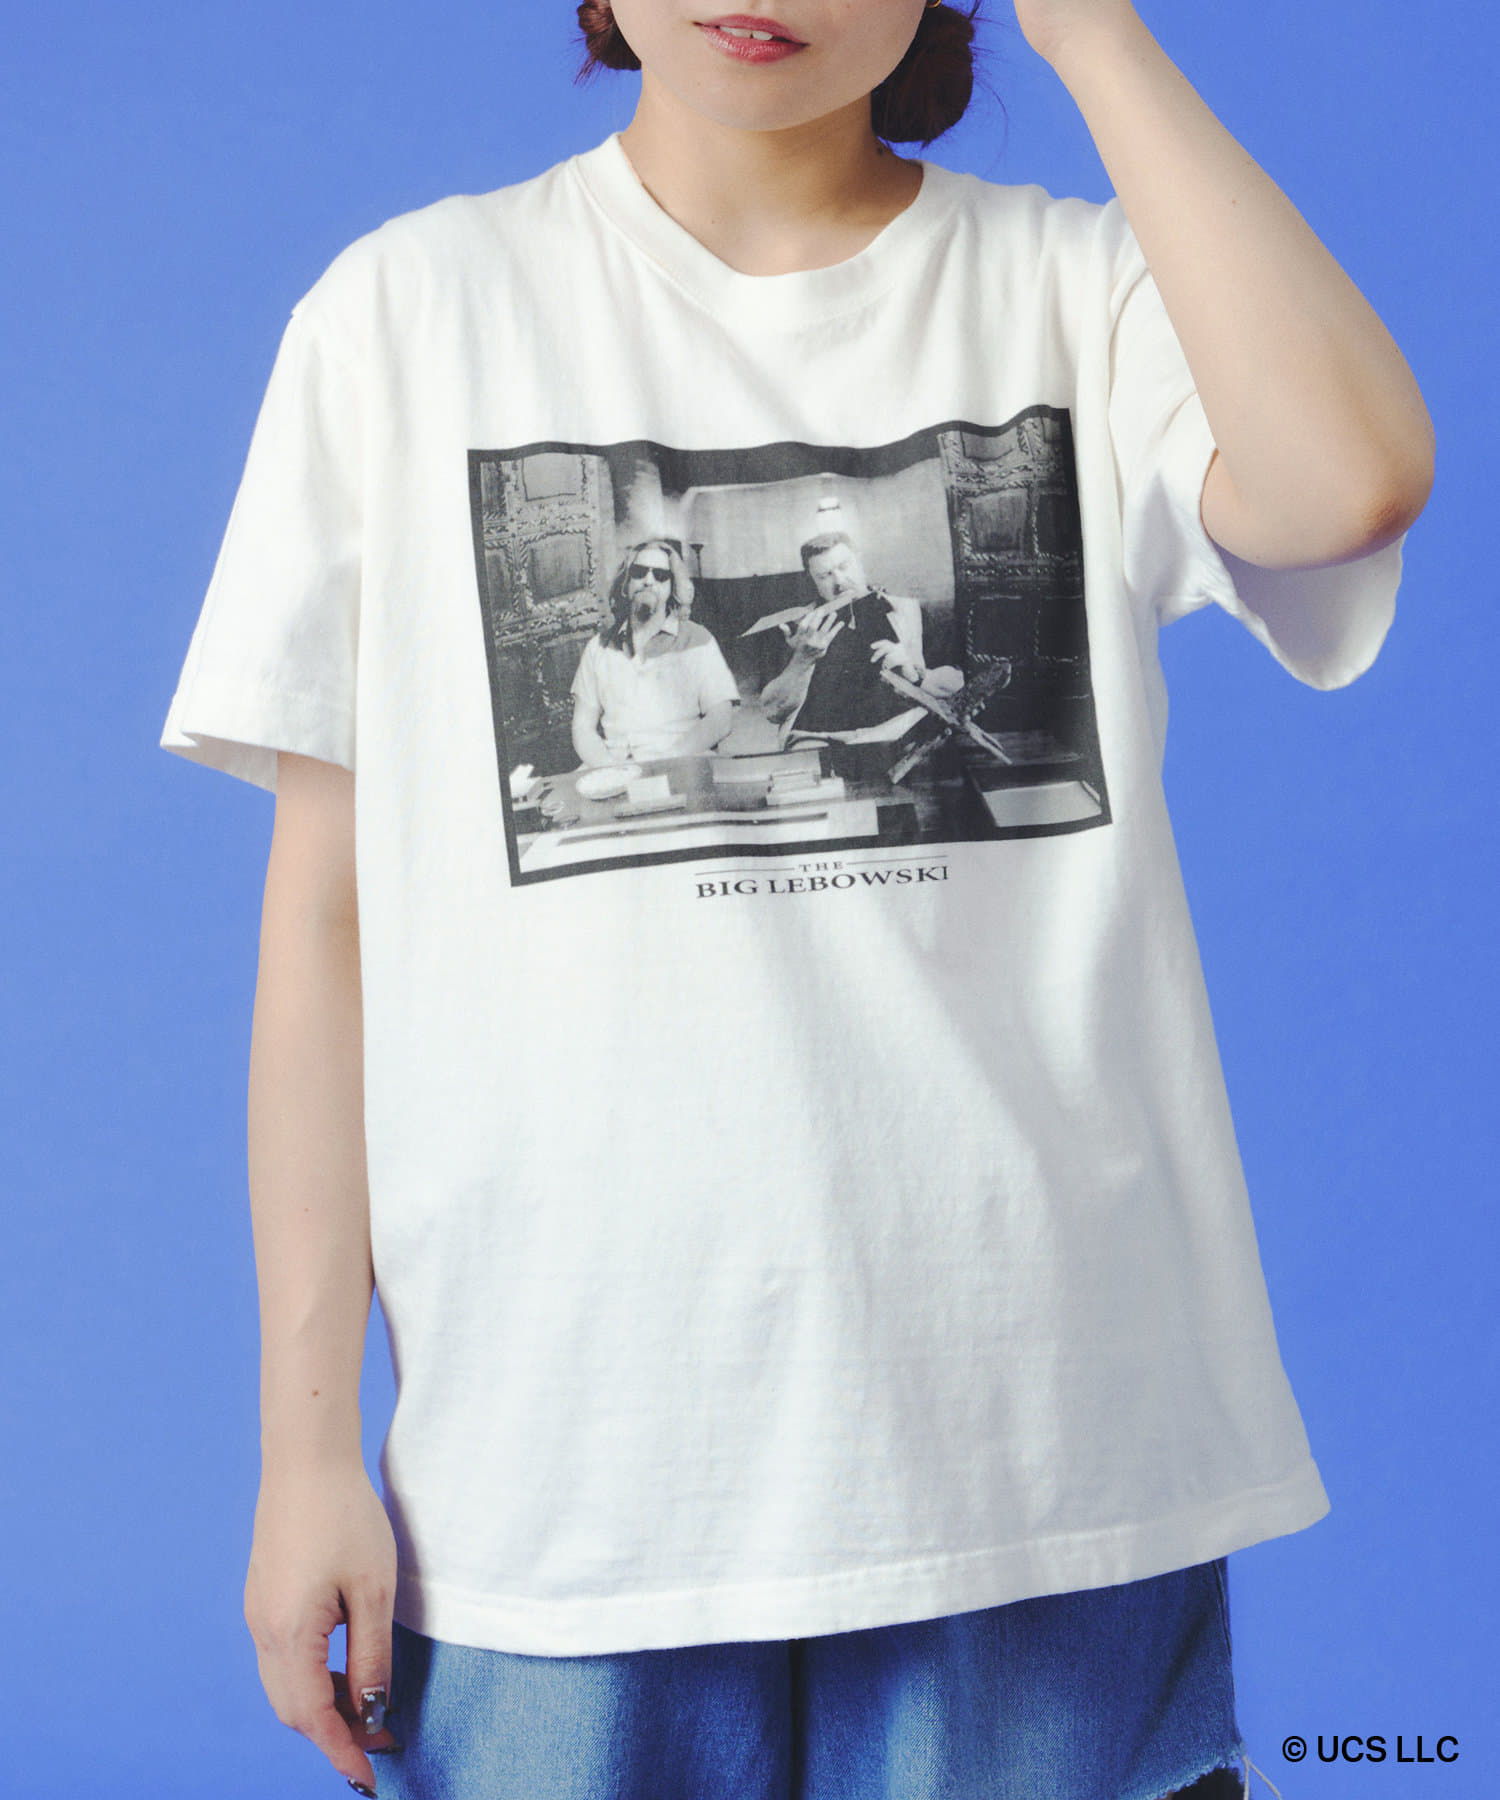 POKEUNI(ポケユニ) Tシャツ BIGLEBOWSKI：M・L・XLサイズ